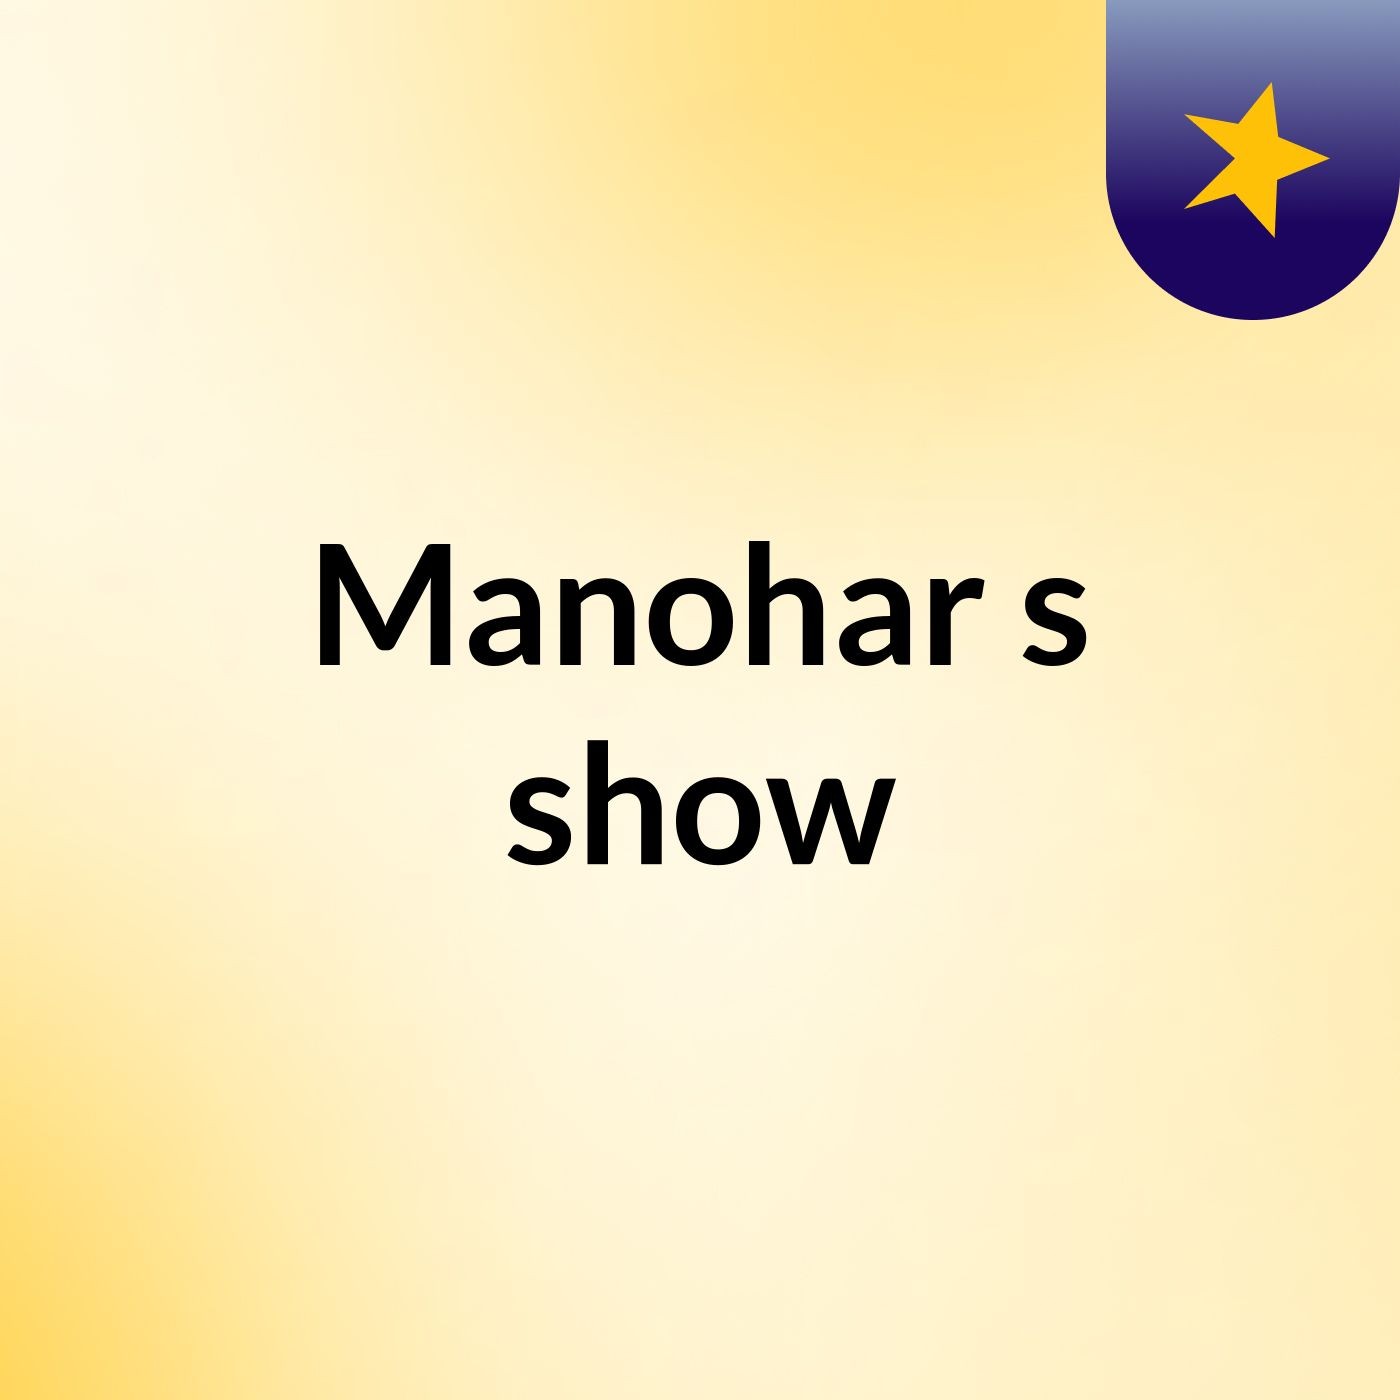 Manohar's show